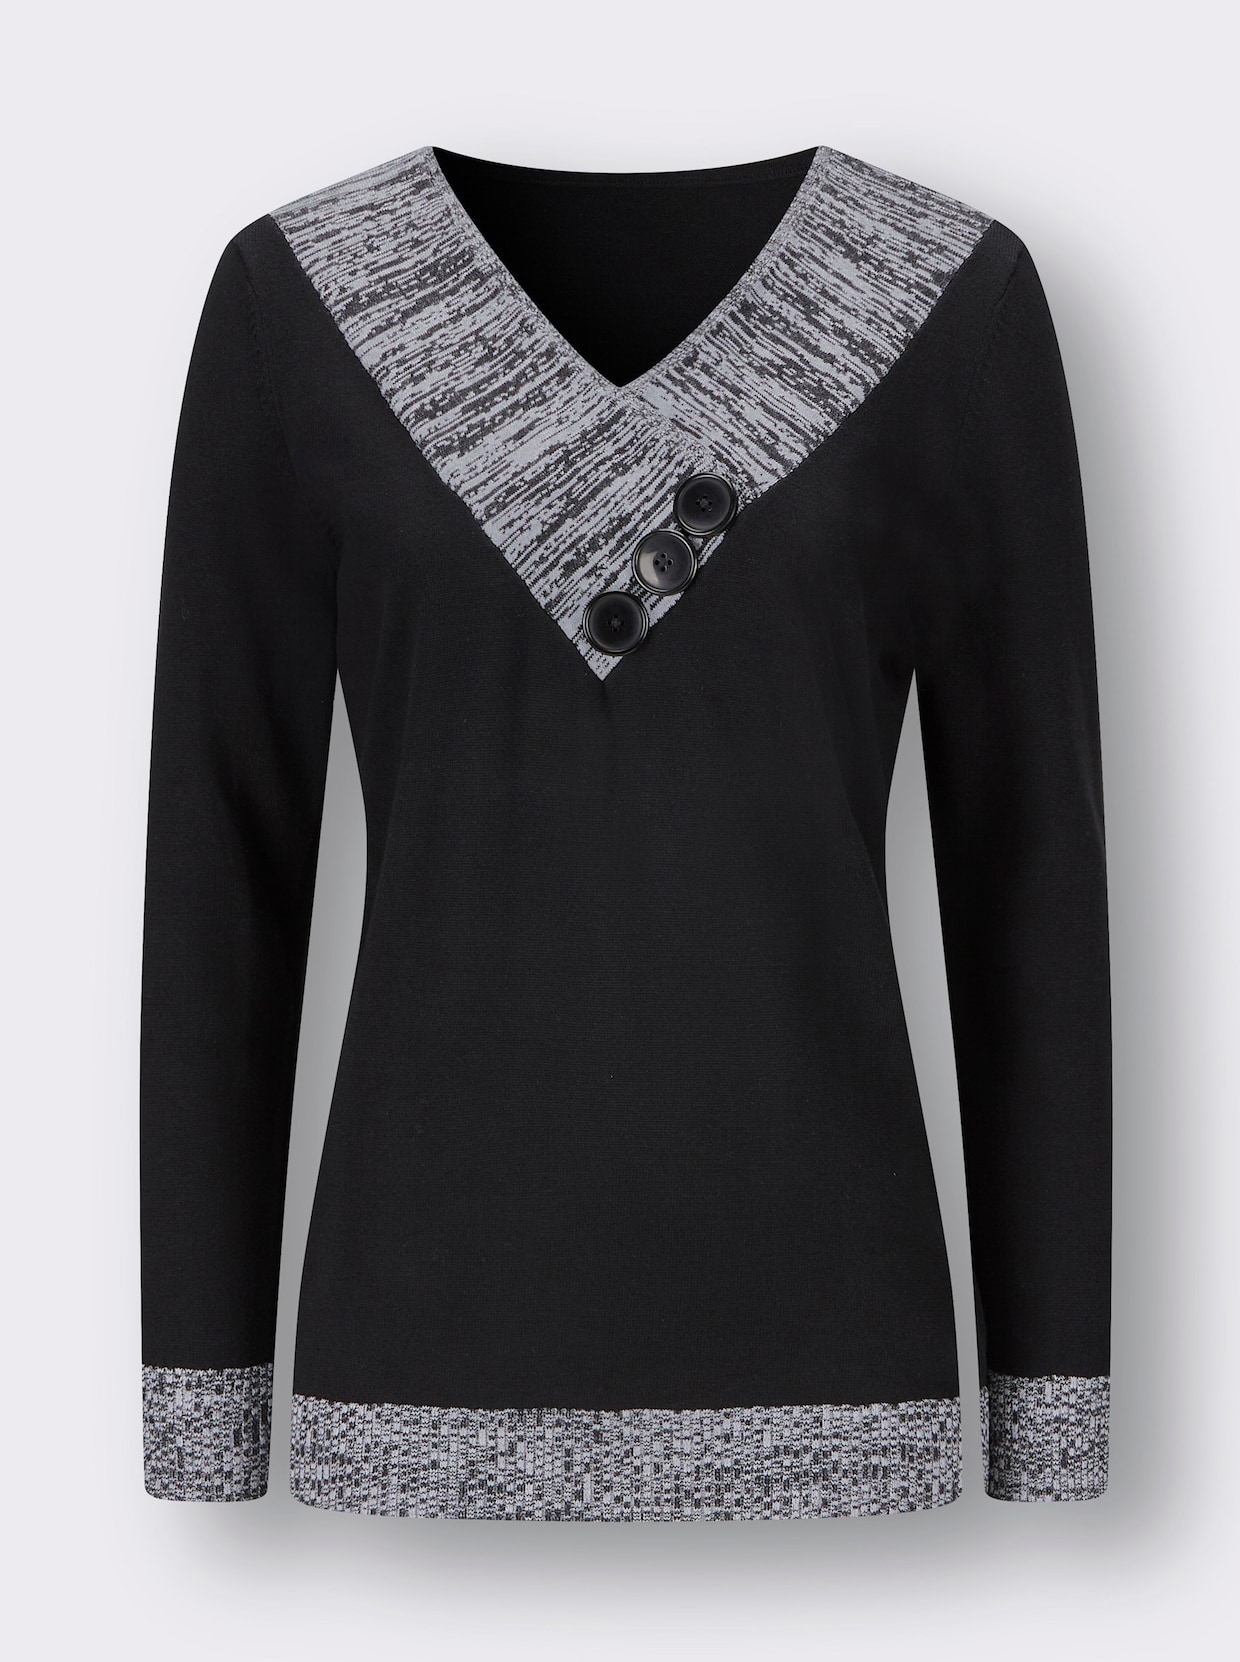 Langarm-Pullover - schwarz